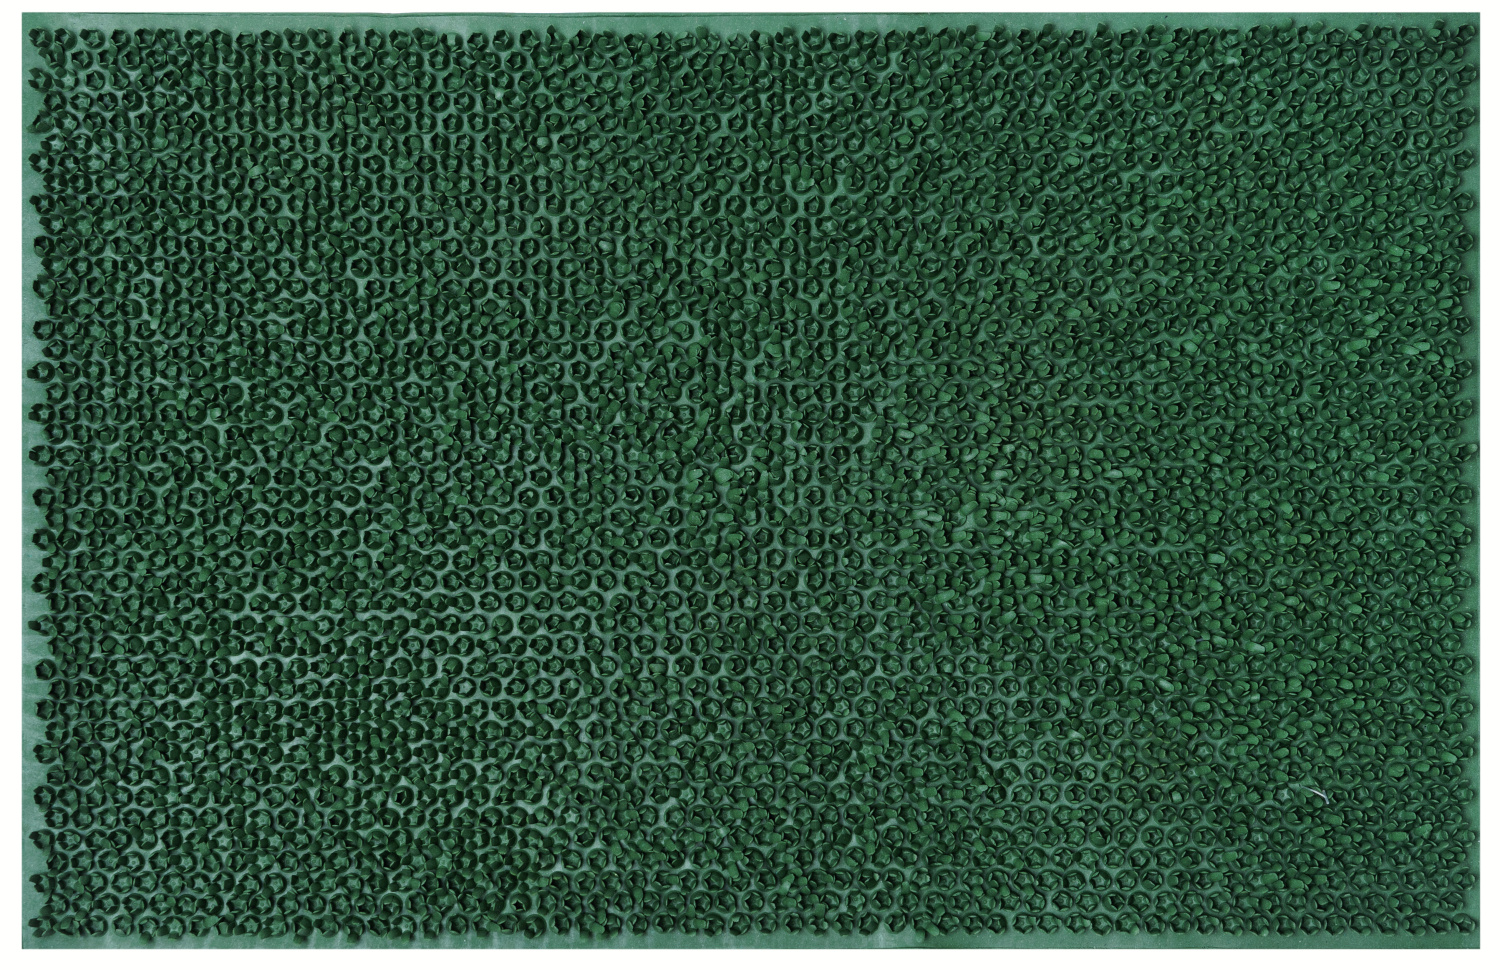 Gumová rohožka - předložka RUBBER GRASS zelená 40x60 cm Mybesthome